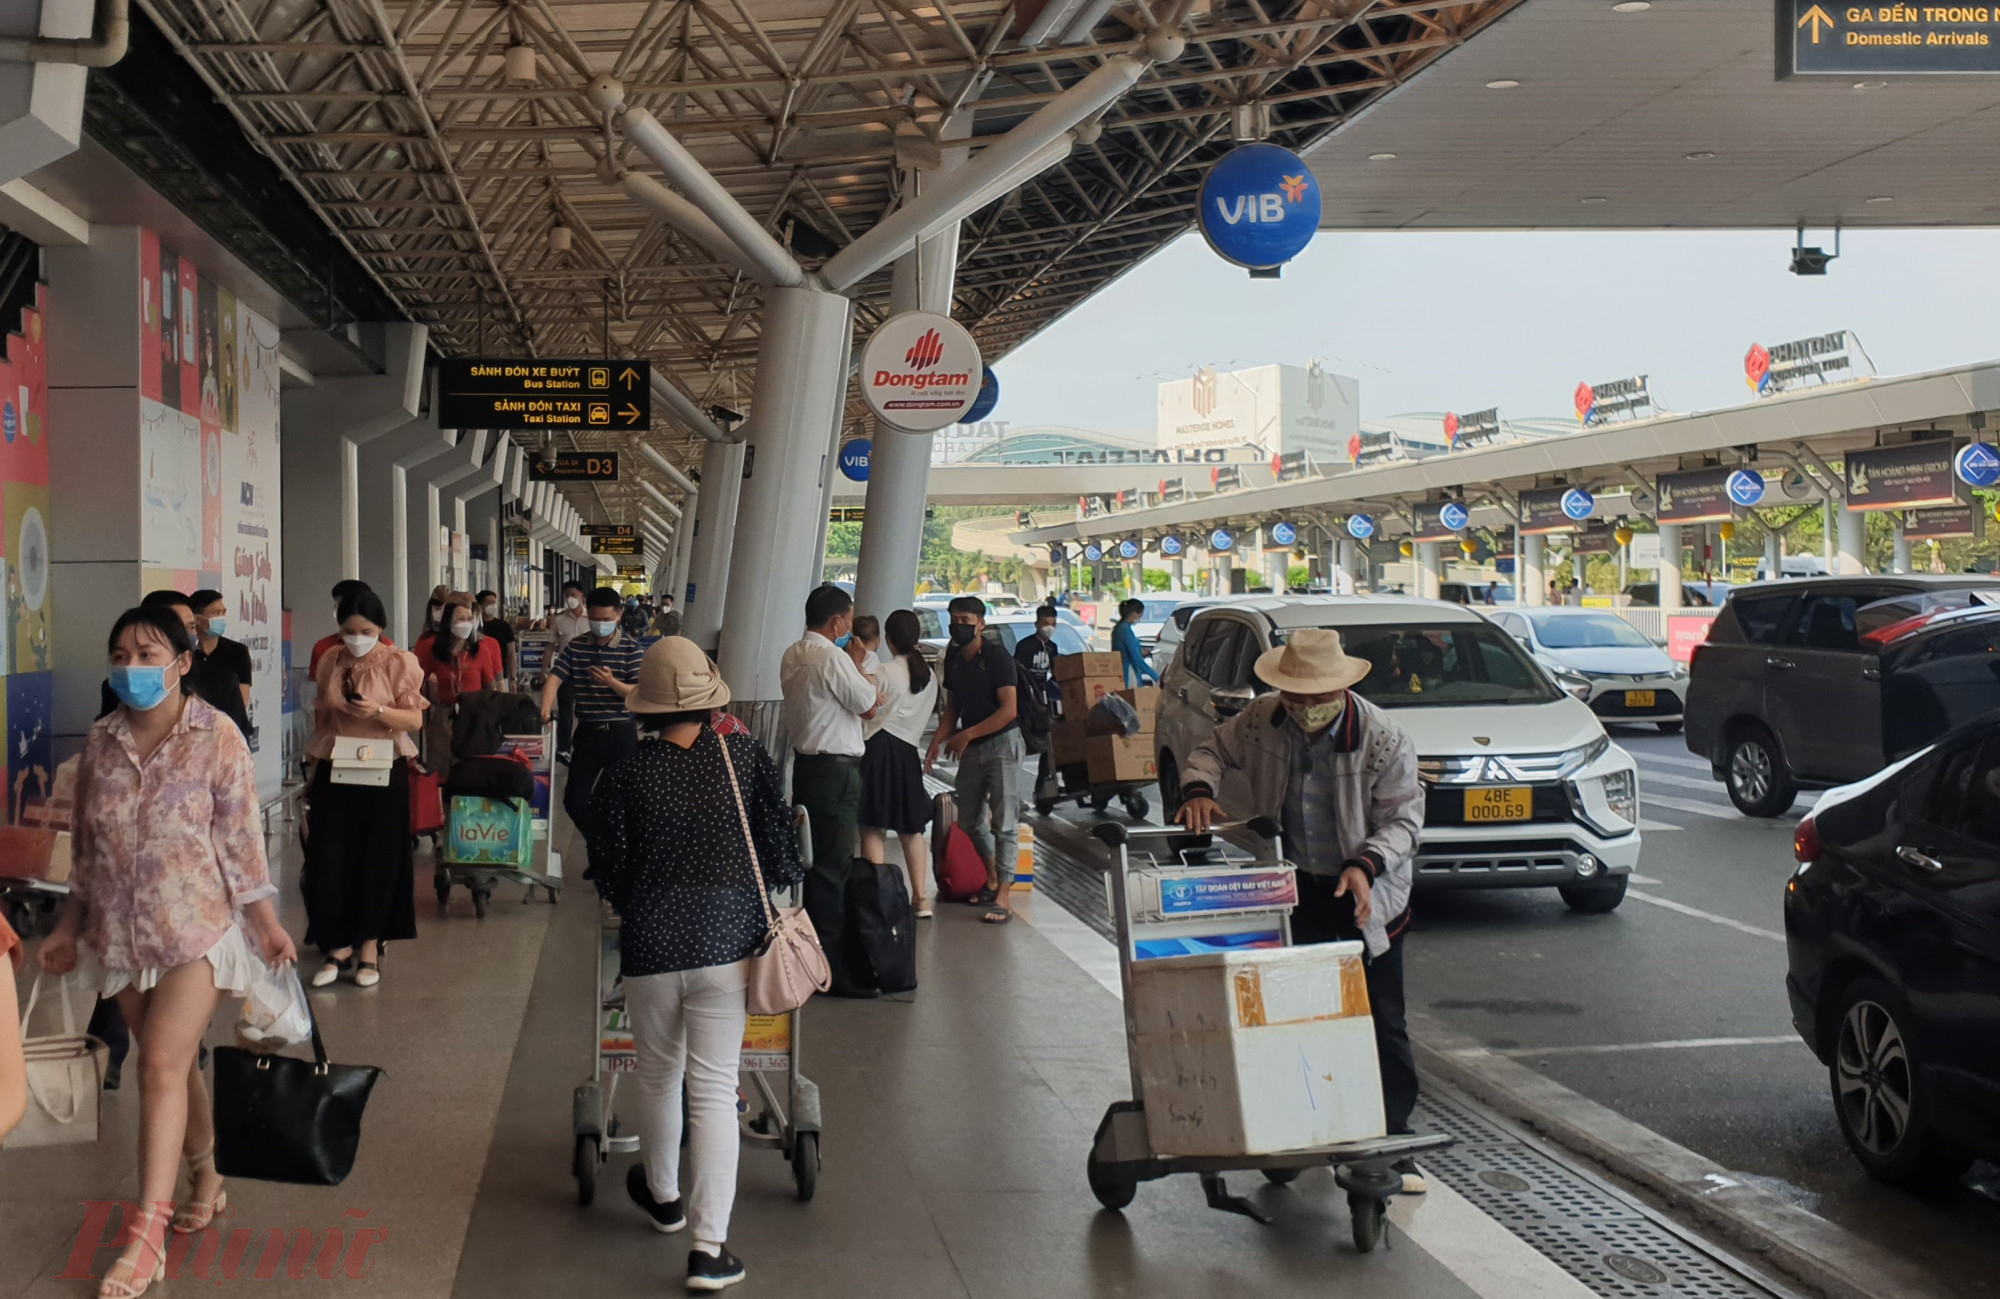 Lượng khách đến sân bay Tân Sơn Nhất so với thời điểm từ Mùng 3 tết Nhâm Dần đến rằm tháng giêng đã bắt đầu giảm mạnh